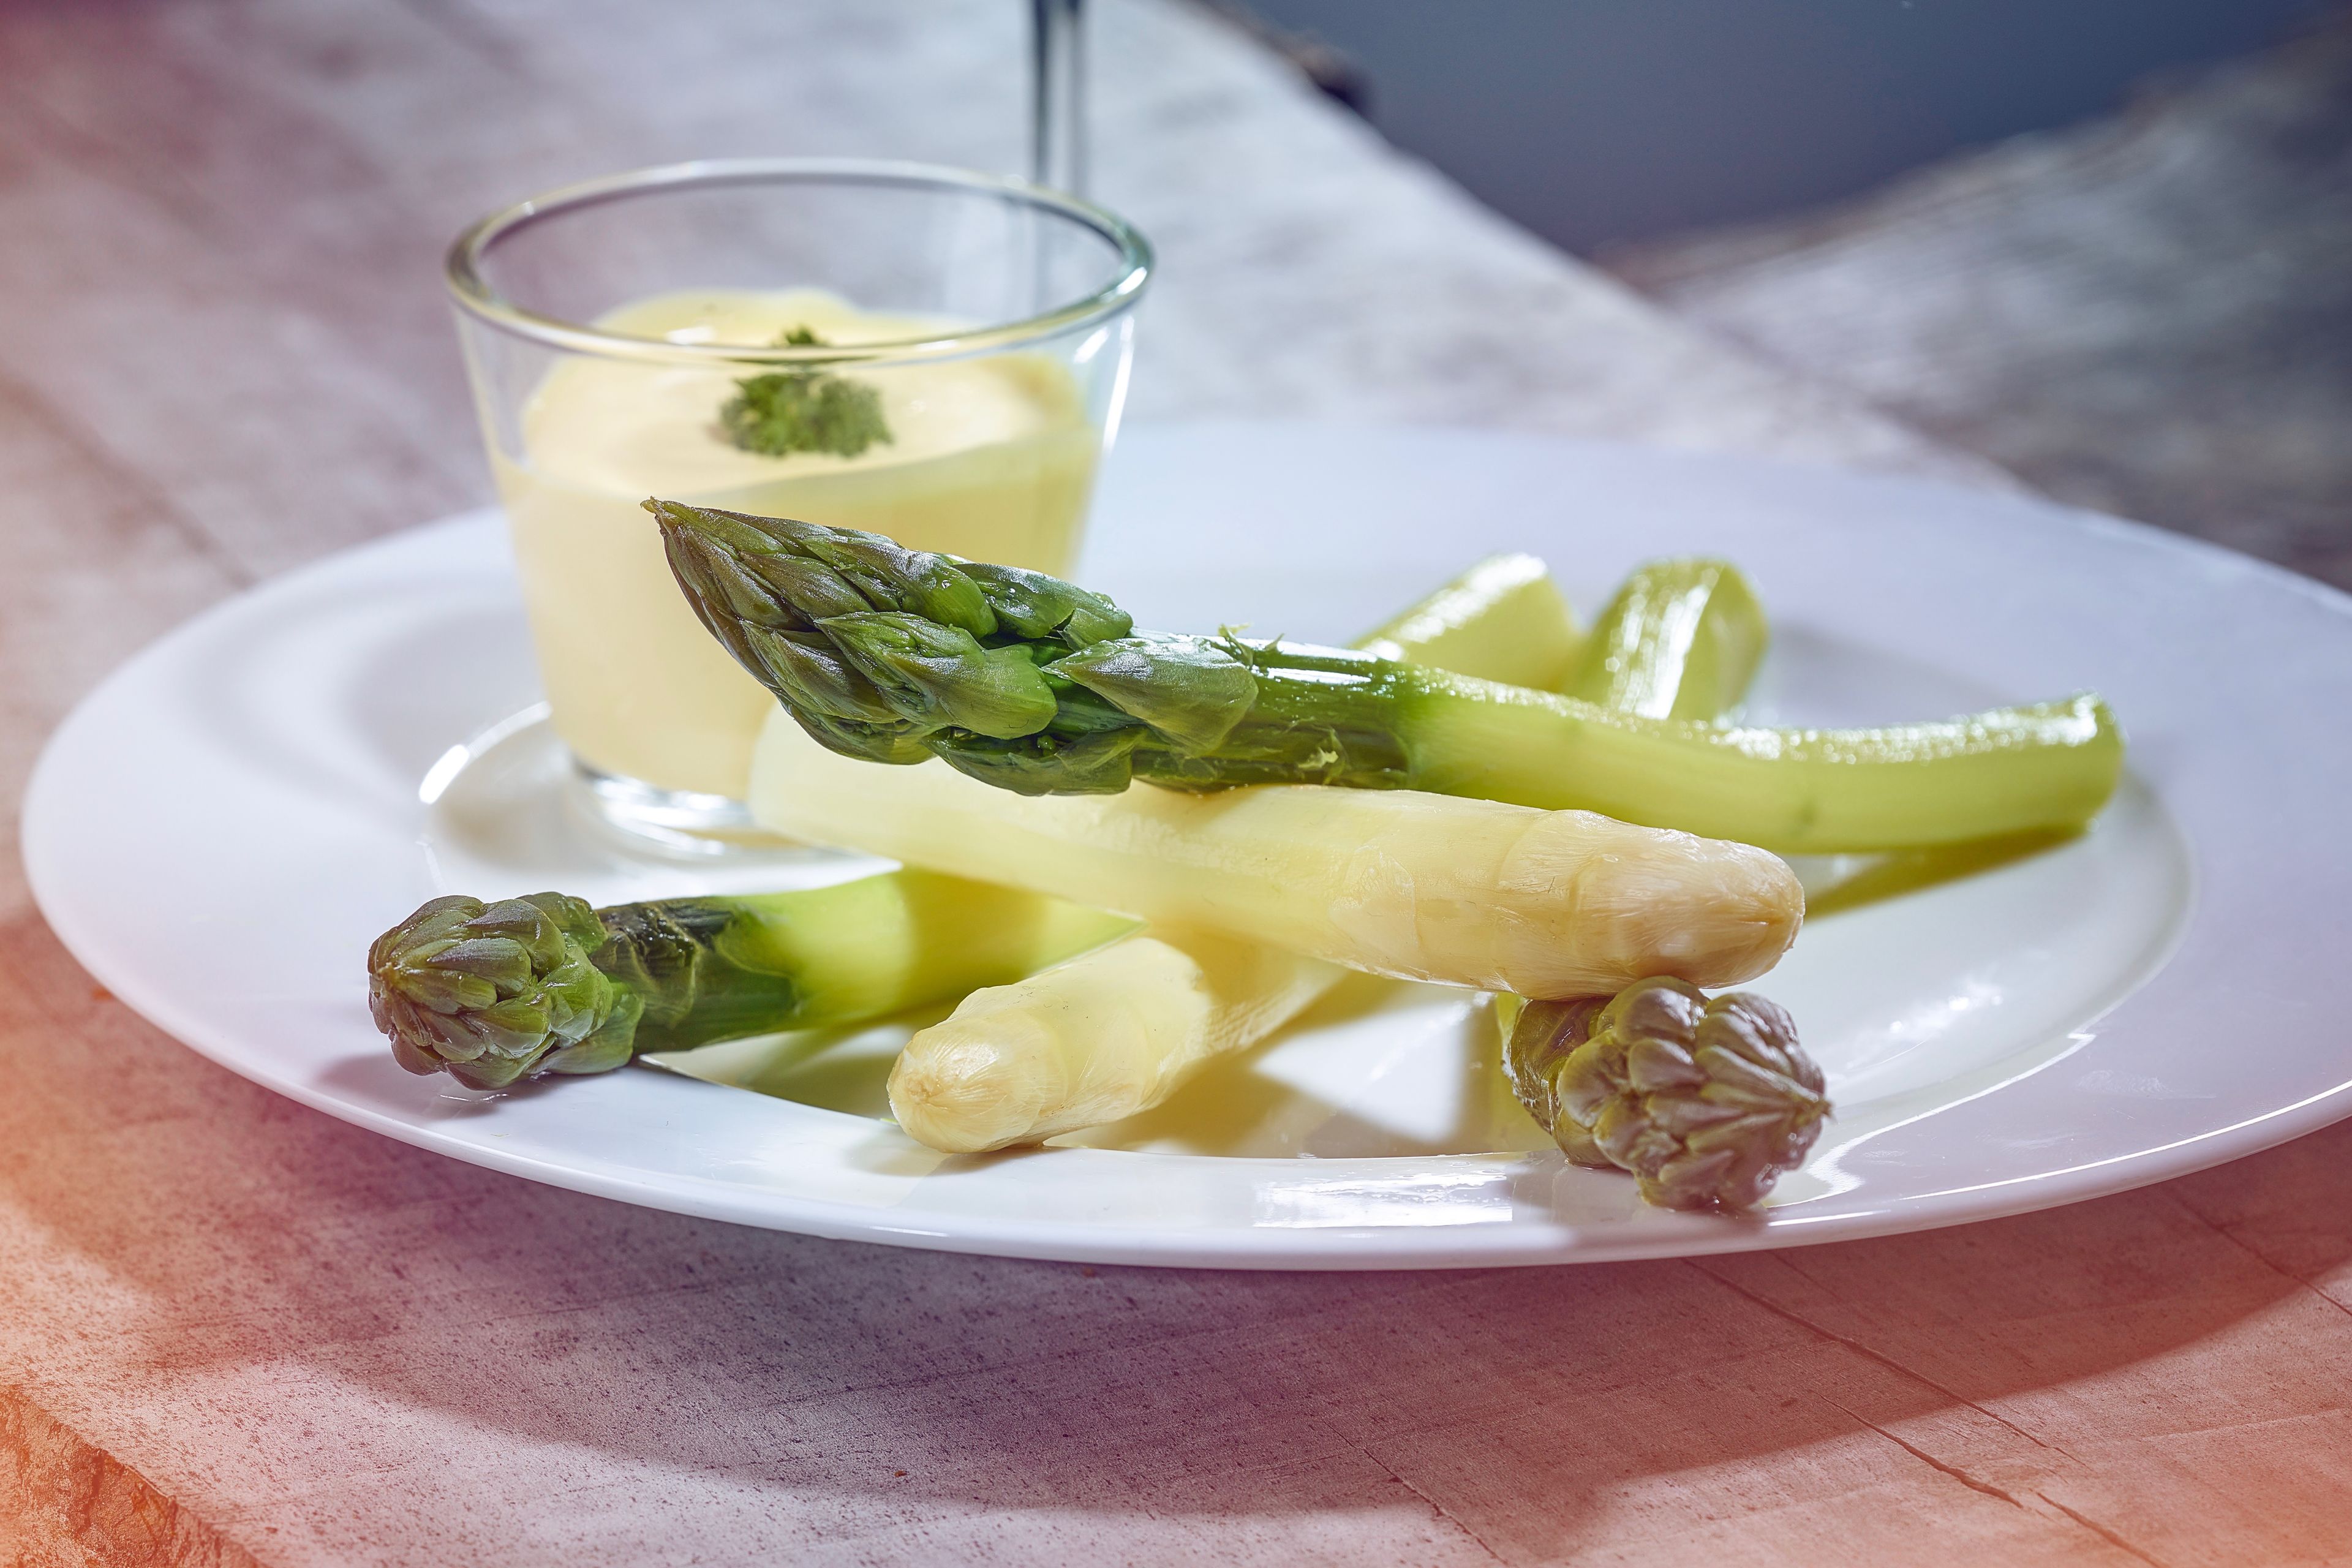 Asparagus on a plate with sauce